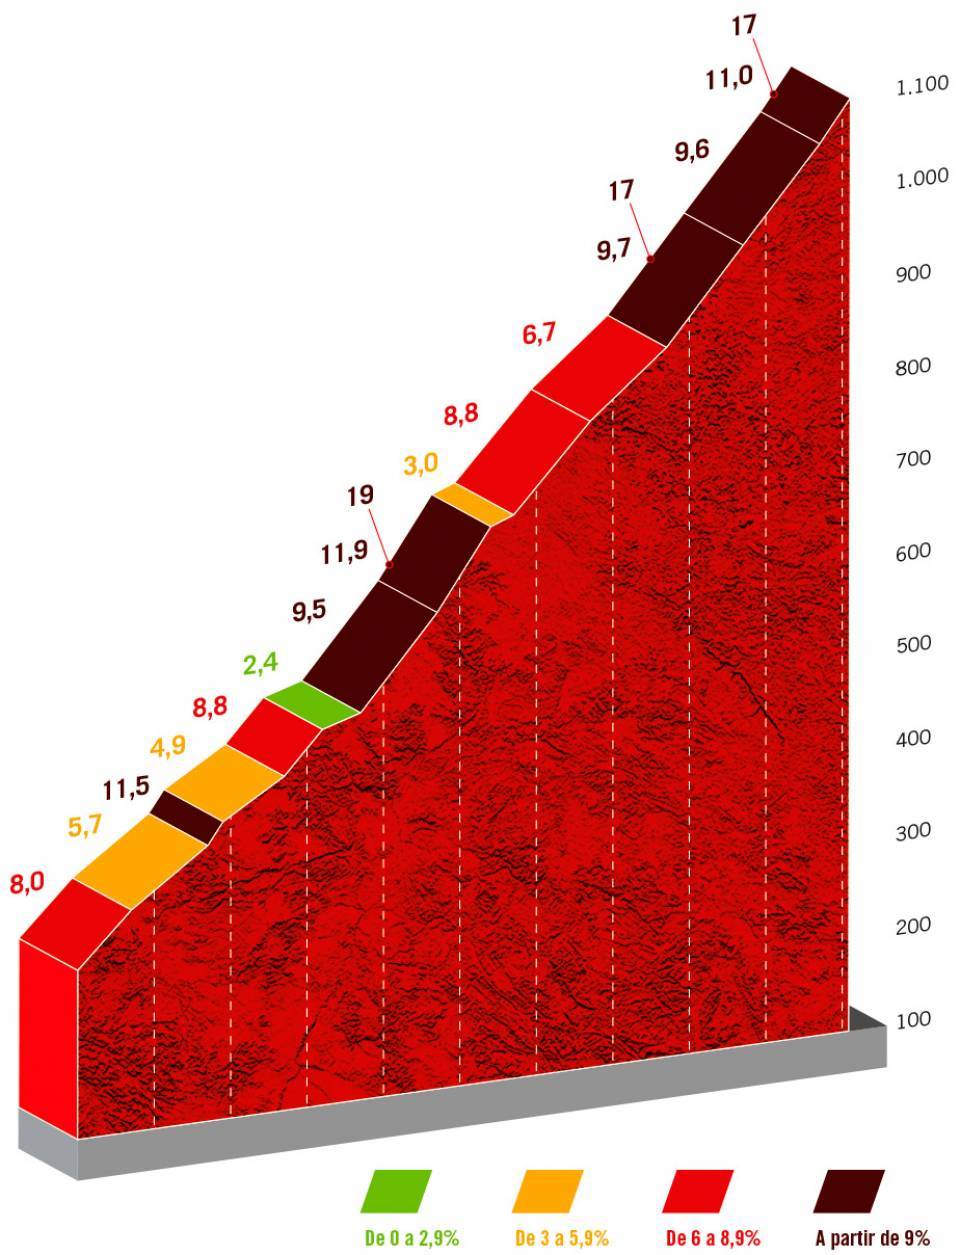 Vuelta a España 2022 the most difficult climbs of the 2022 race